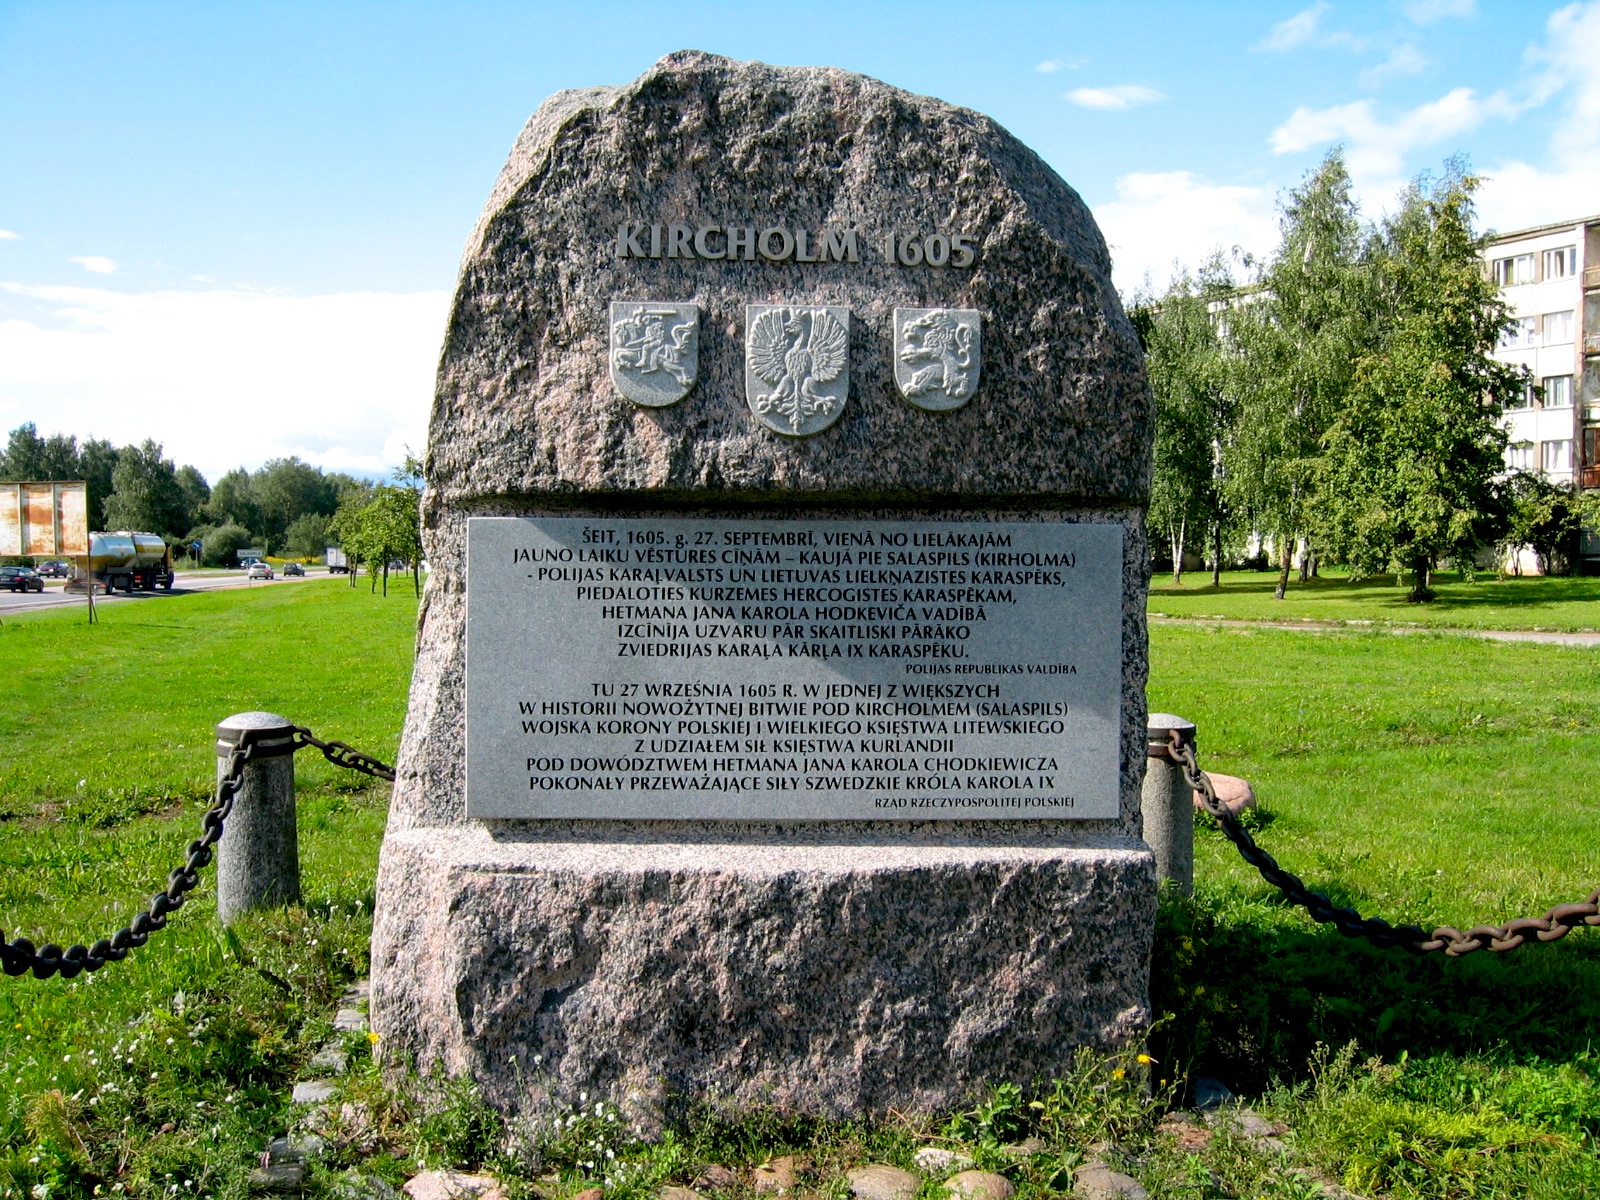 Fotografia przedstawiająca Monument to the Battle of Kircholm in Salaspils